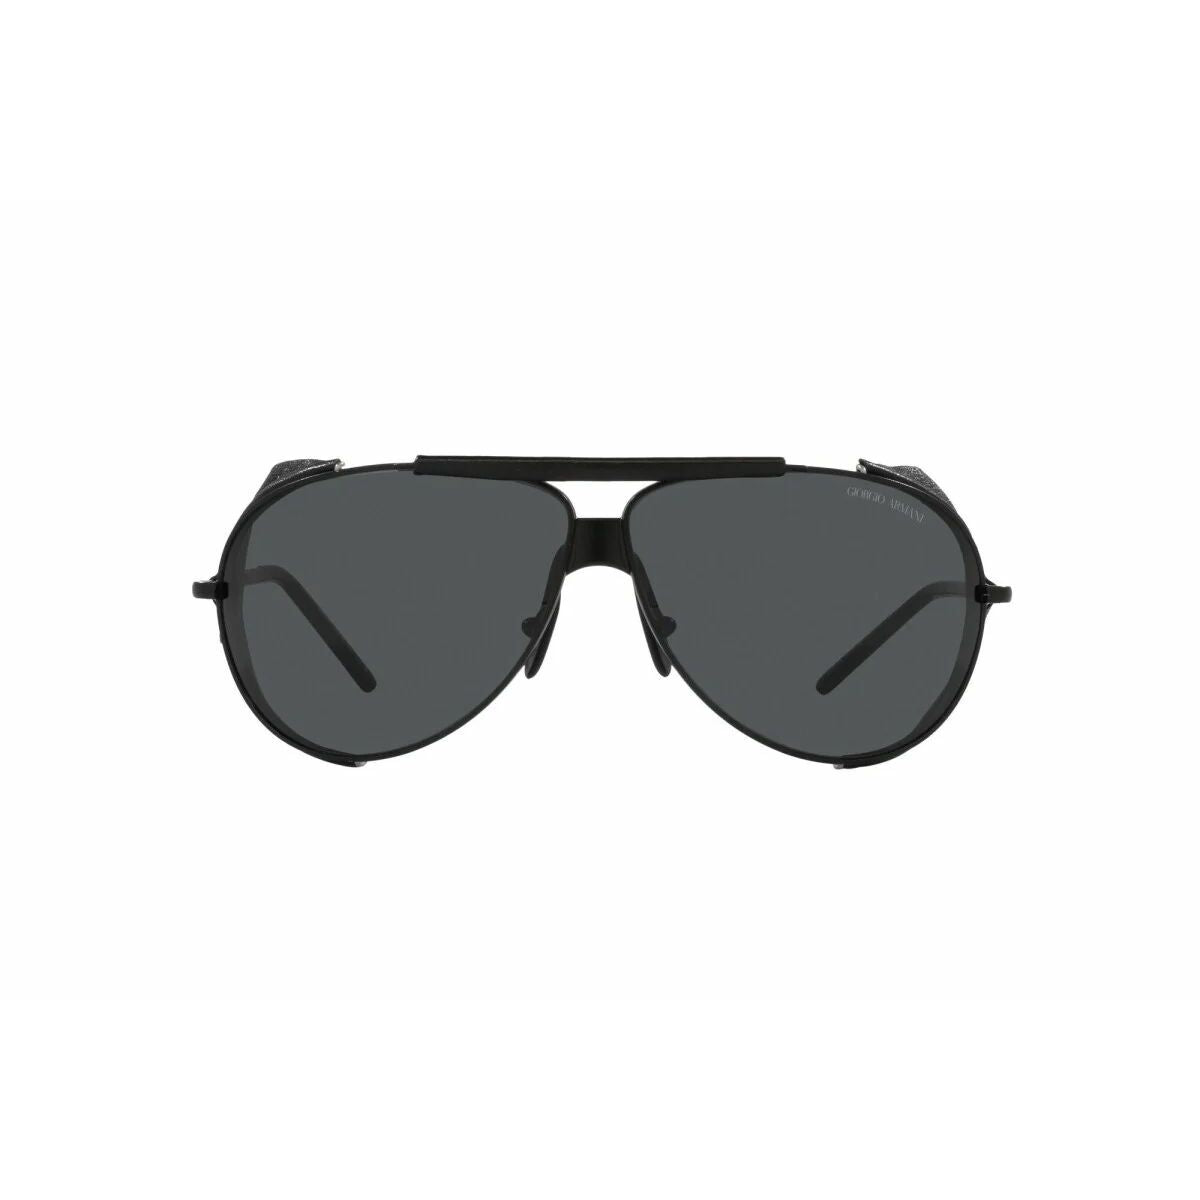 Men's Sunglasses Armani AR6139Q-300187 Ø 69 mm